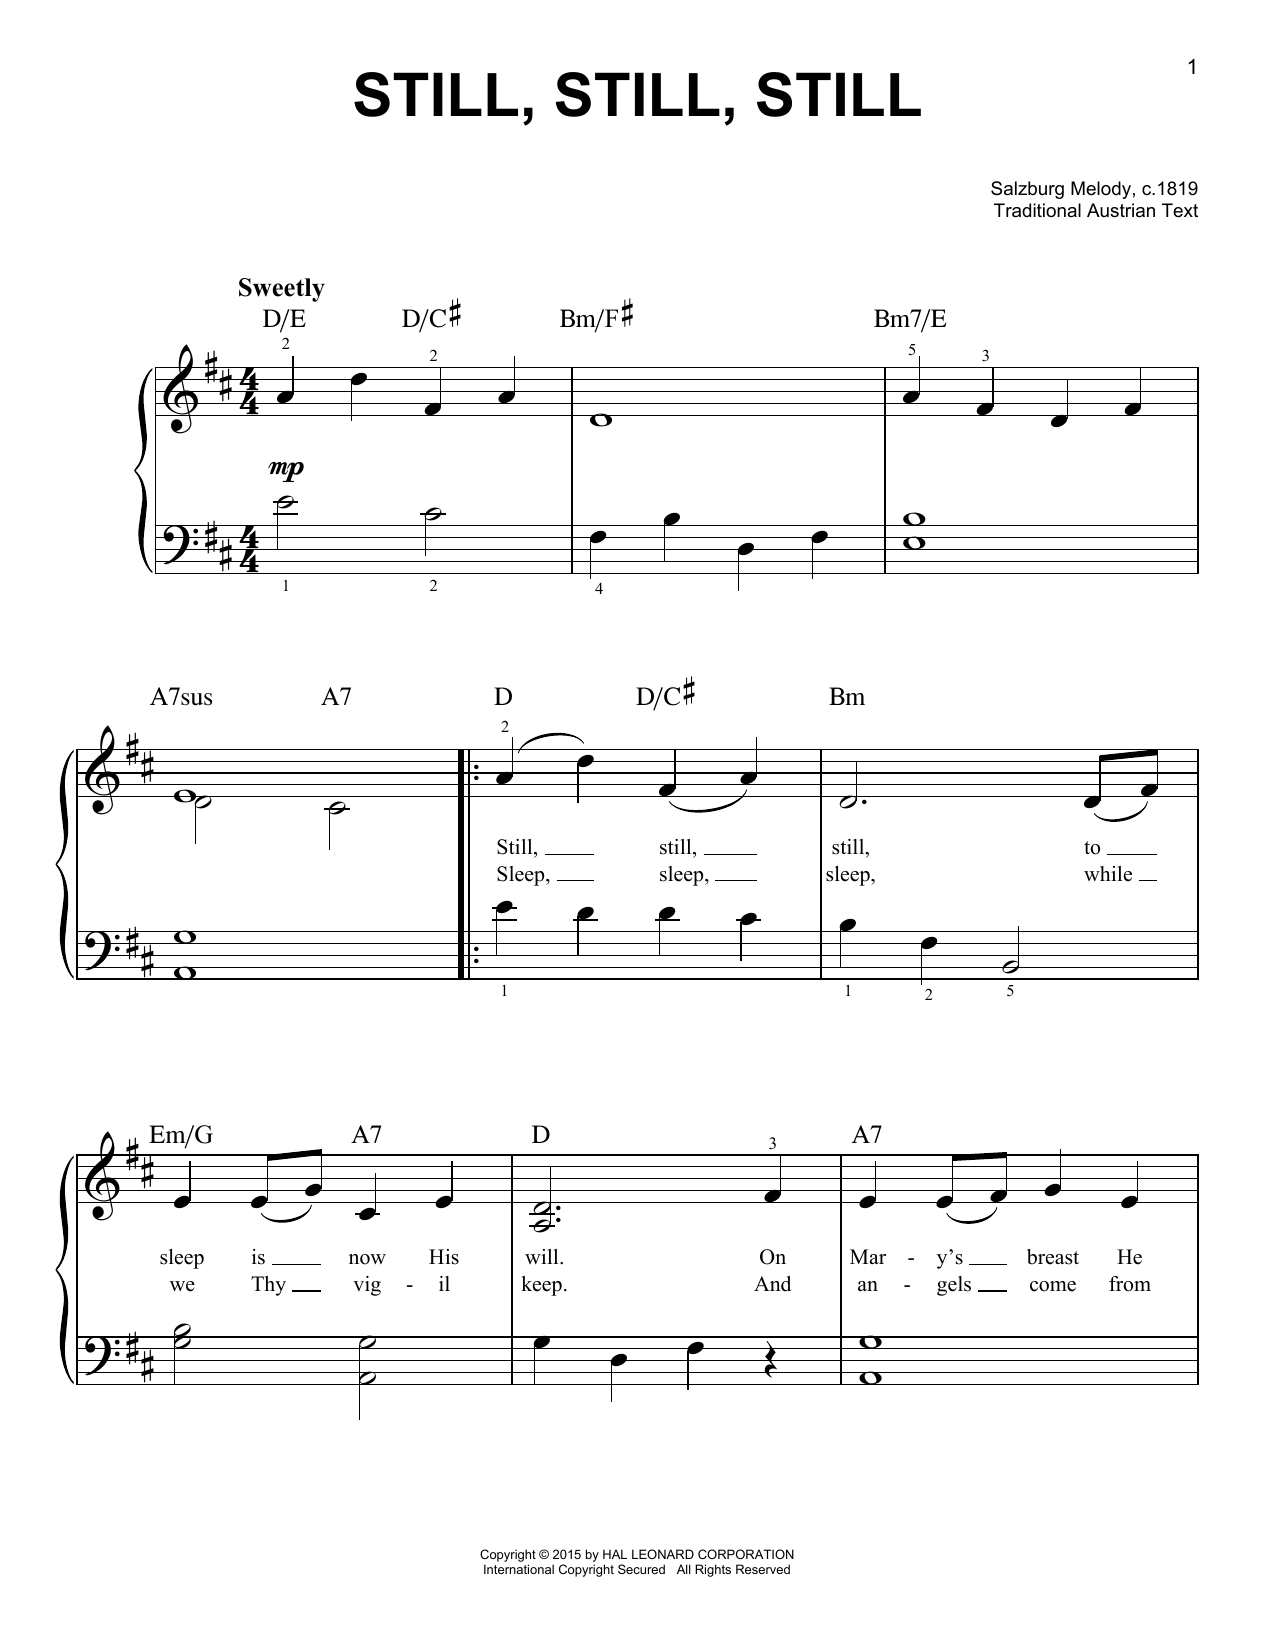 Salzburg Melody, c.1819 Still, Still, Still Sheet Music Notes & Chords for VLNDT - Download or Print PDF